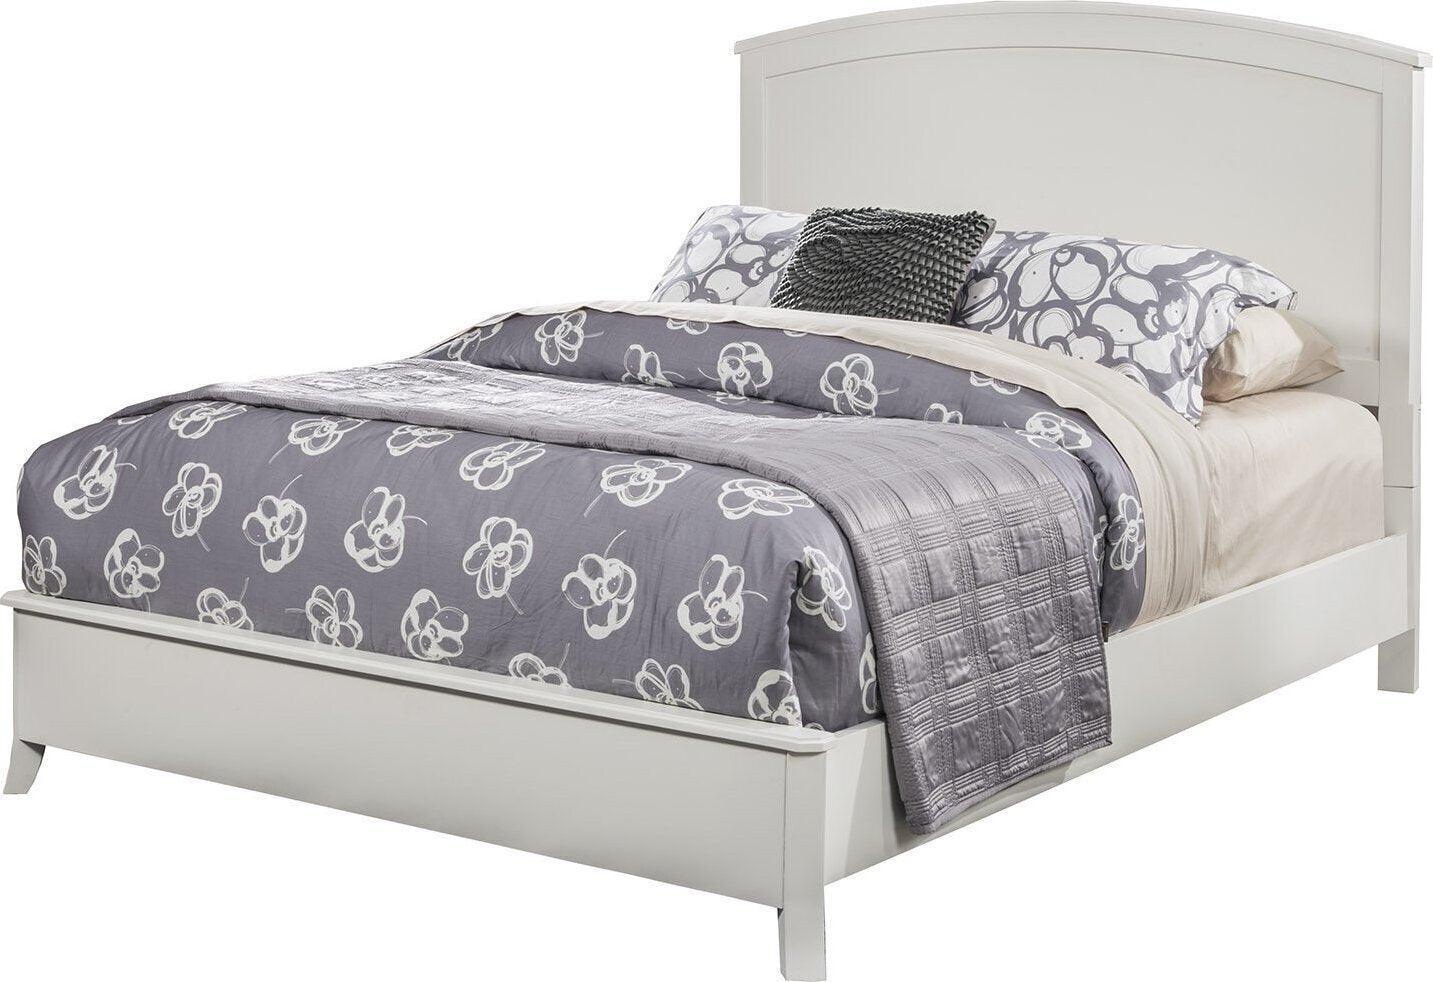 Alpine Furniture Beds - Baker Standard King Panel Bed White